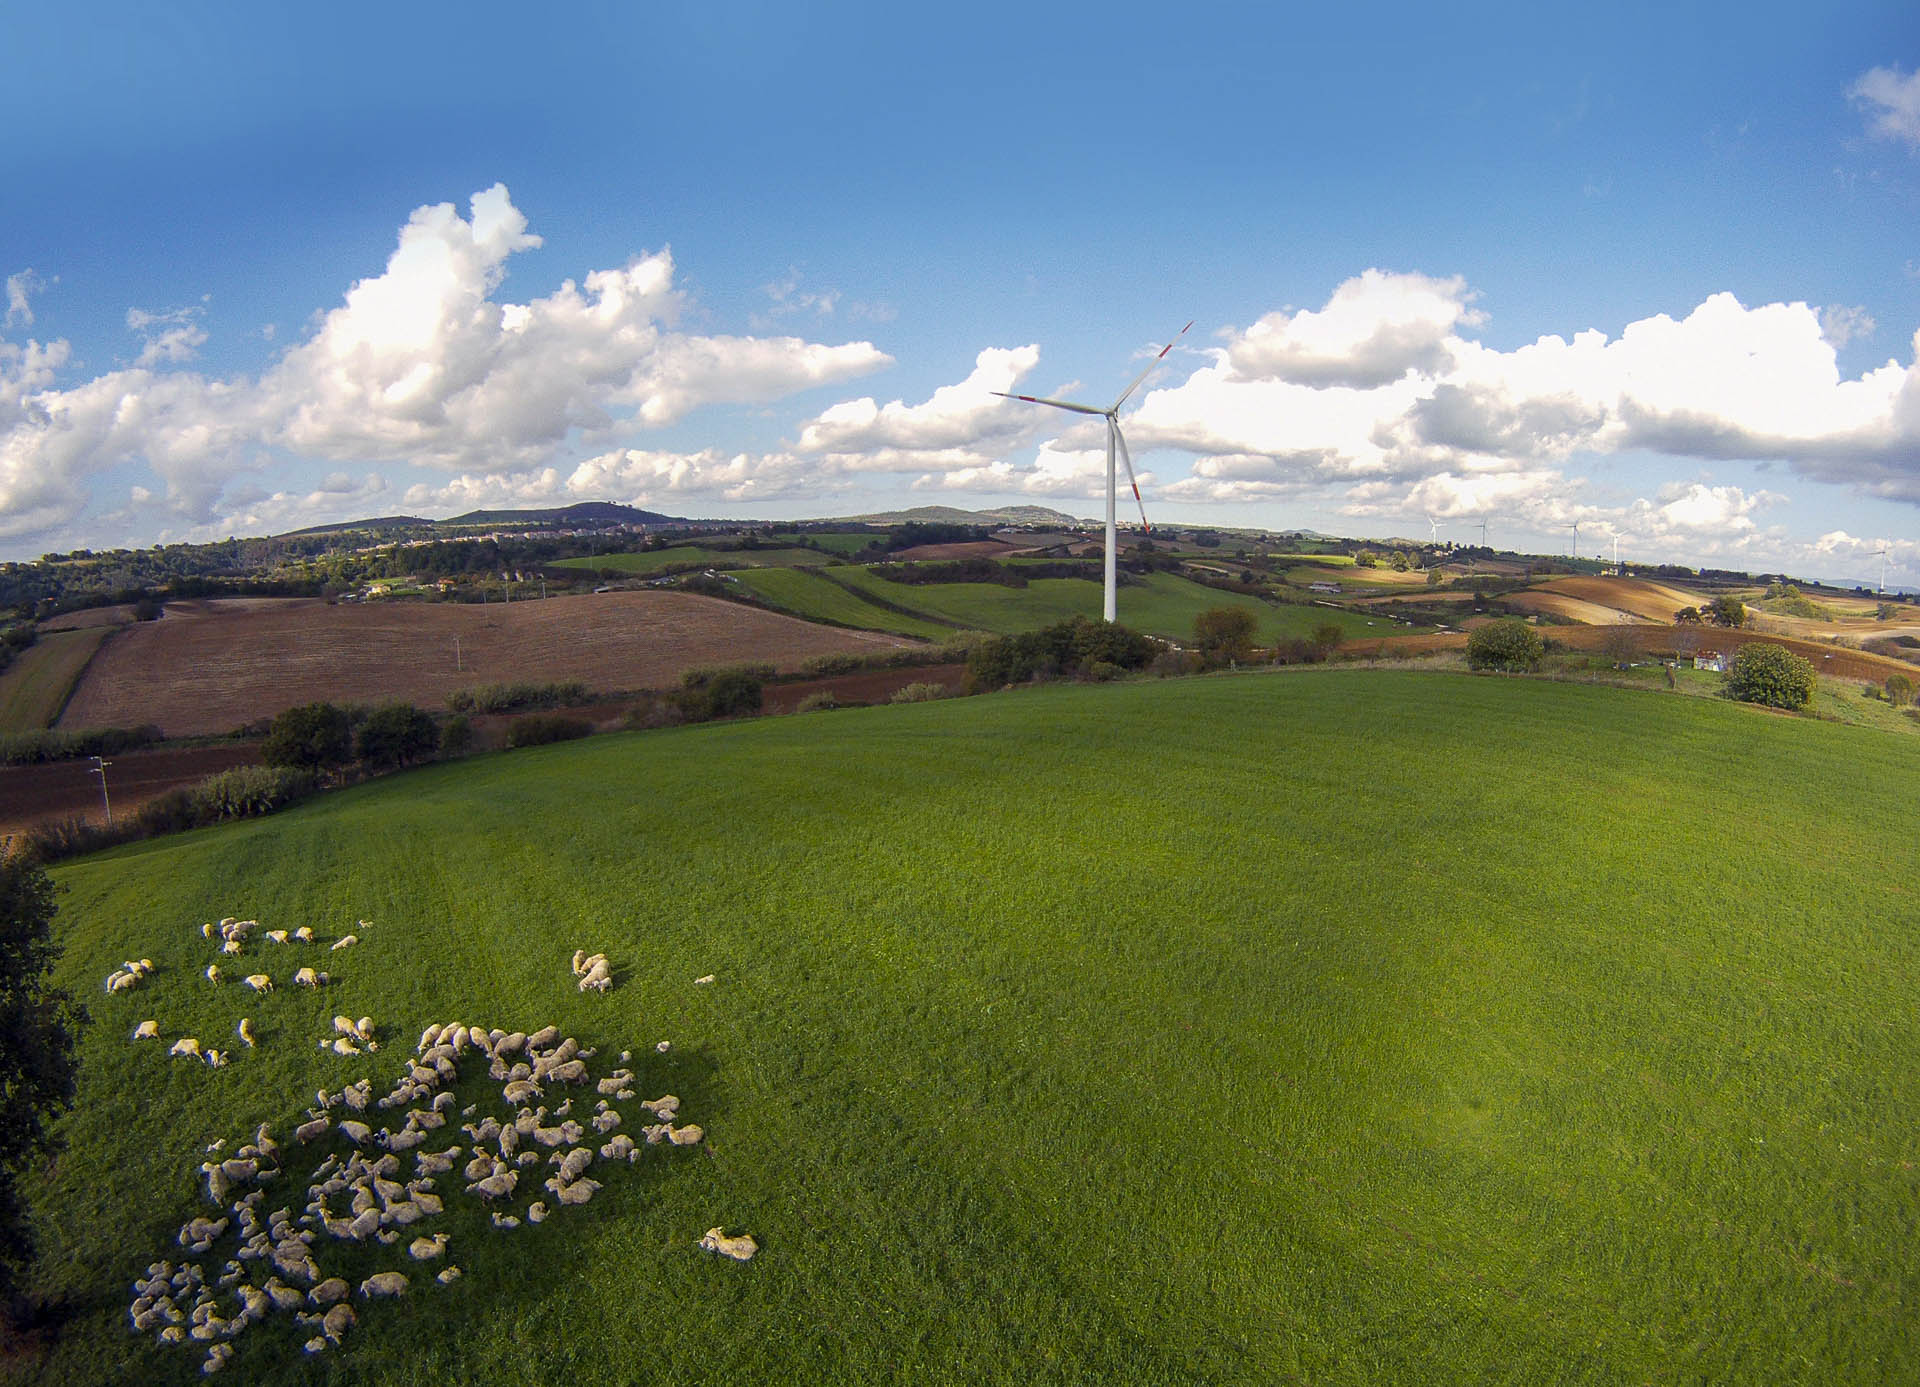 Parco eolico di Piansano produzione energia verde rinnovabile CVA